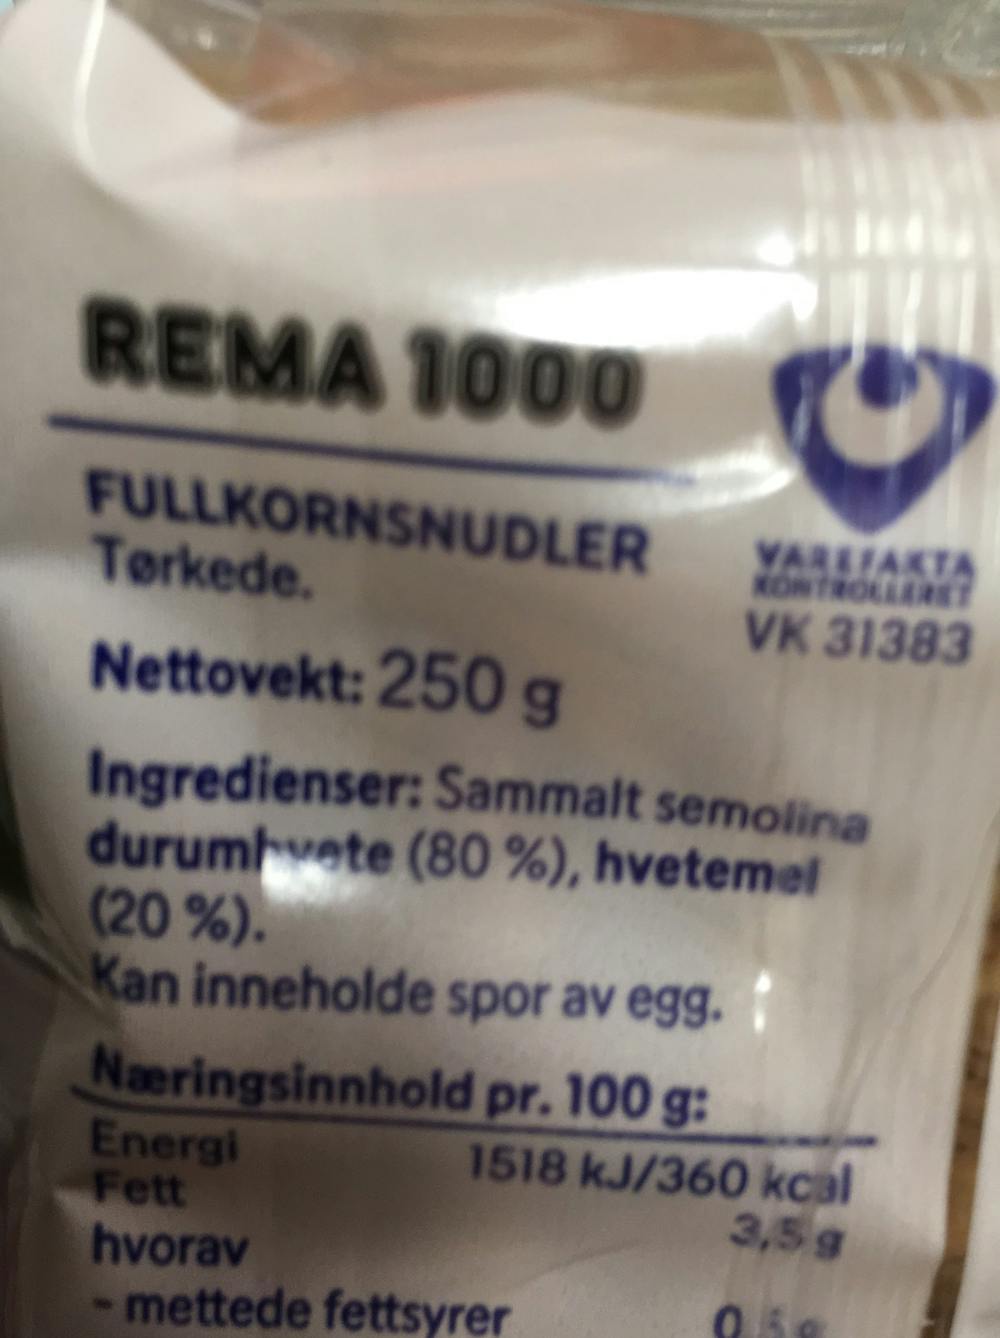 Ingredienslisten til Fullkornsnudler, Rema 1000